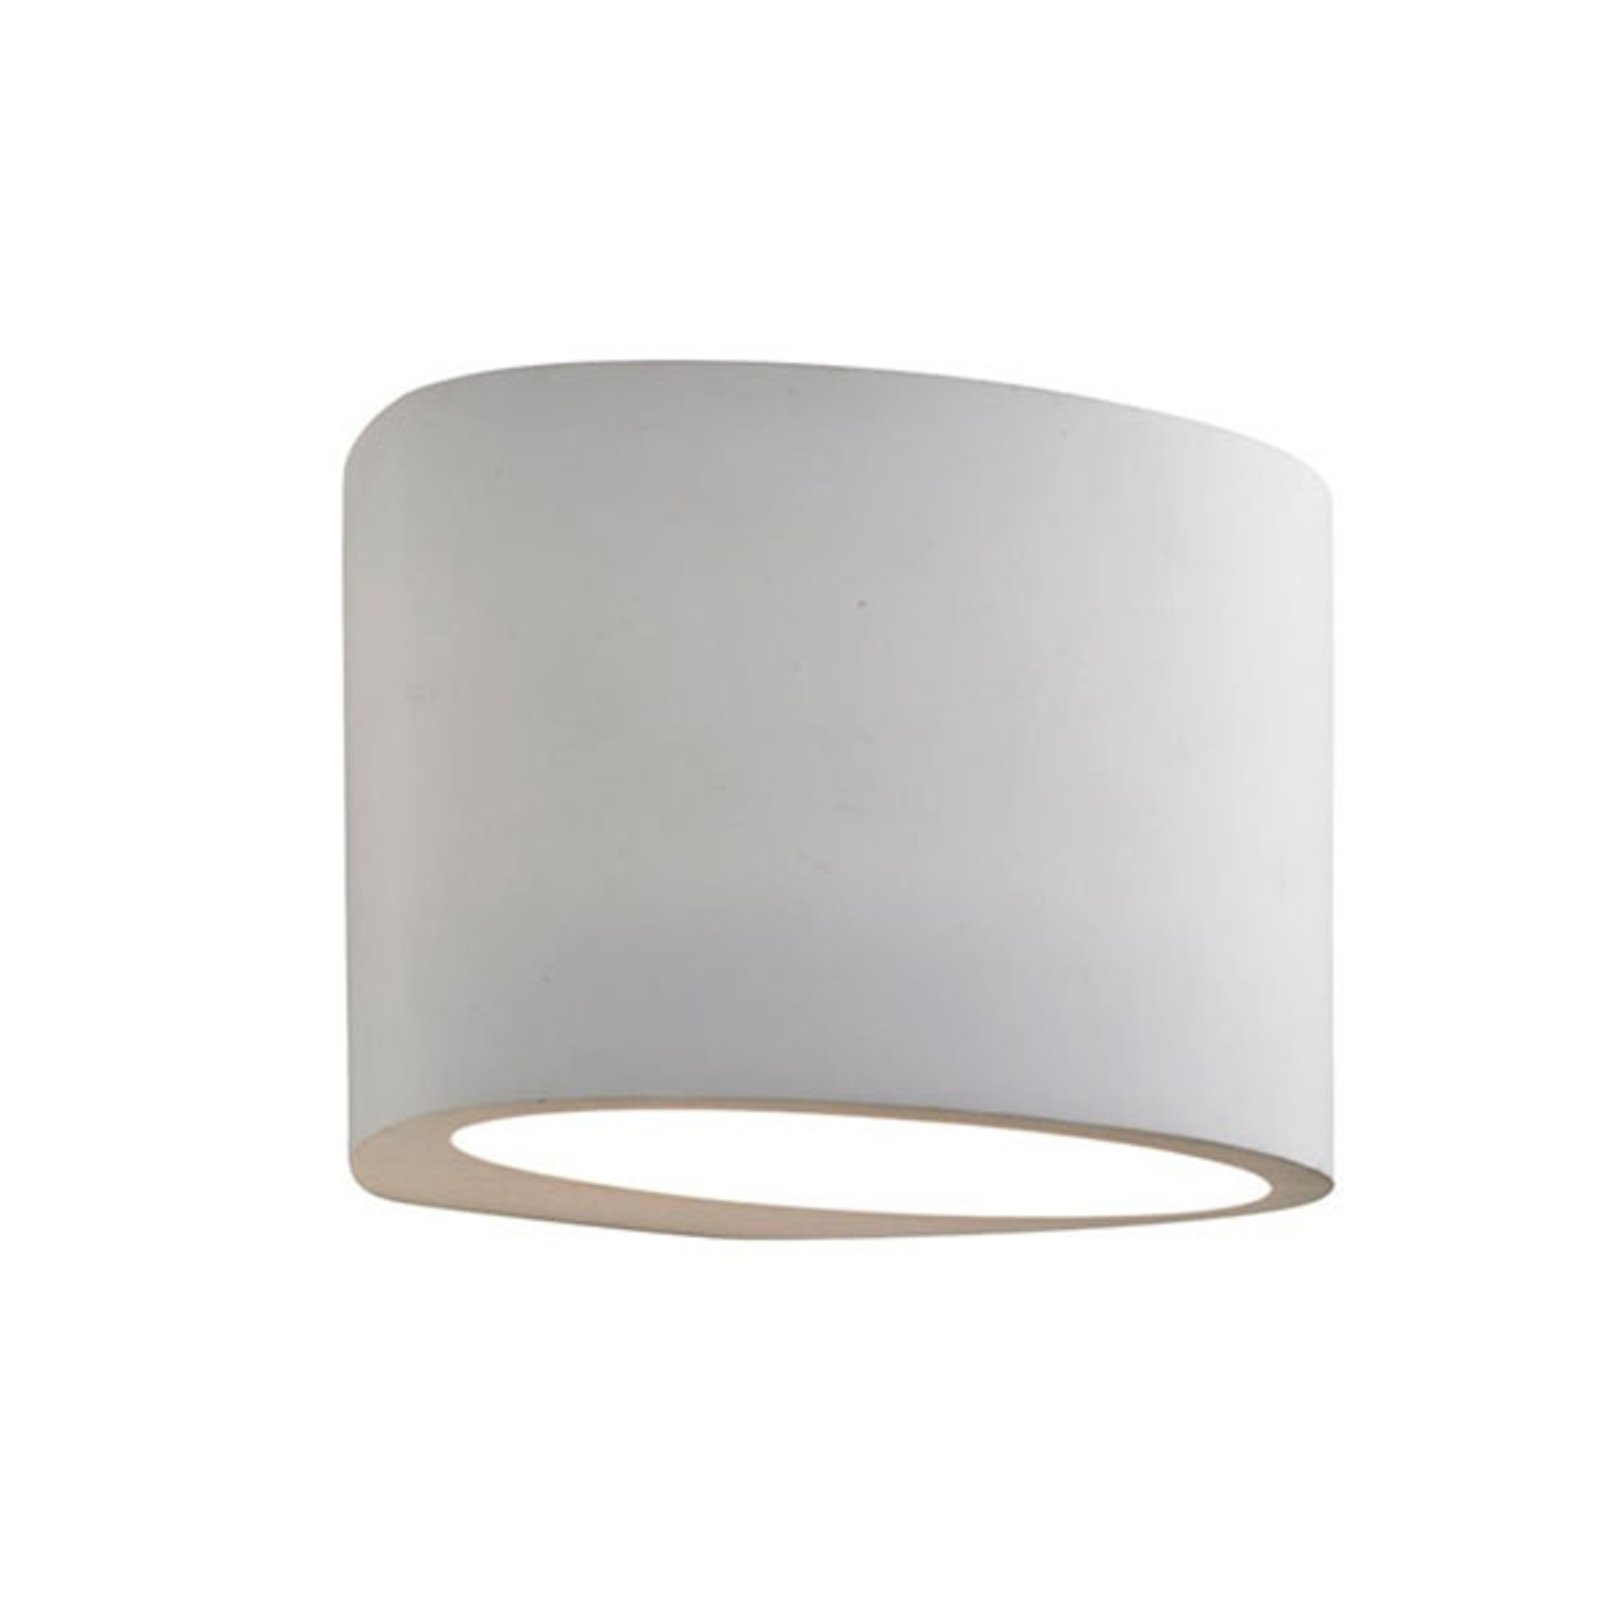 Gipsana zidna svjetiljka 8721 gore/dolje ovalnog oblika